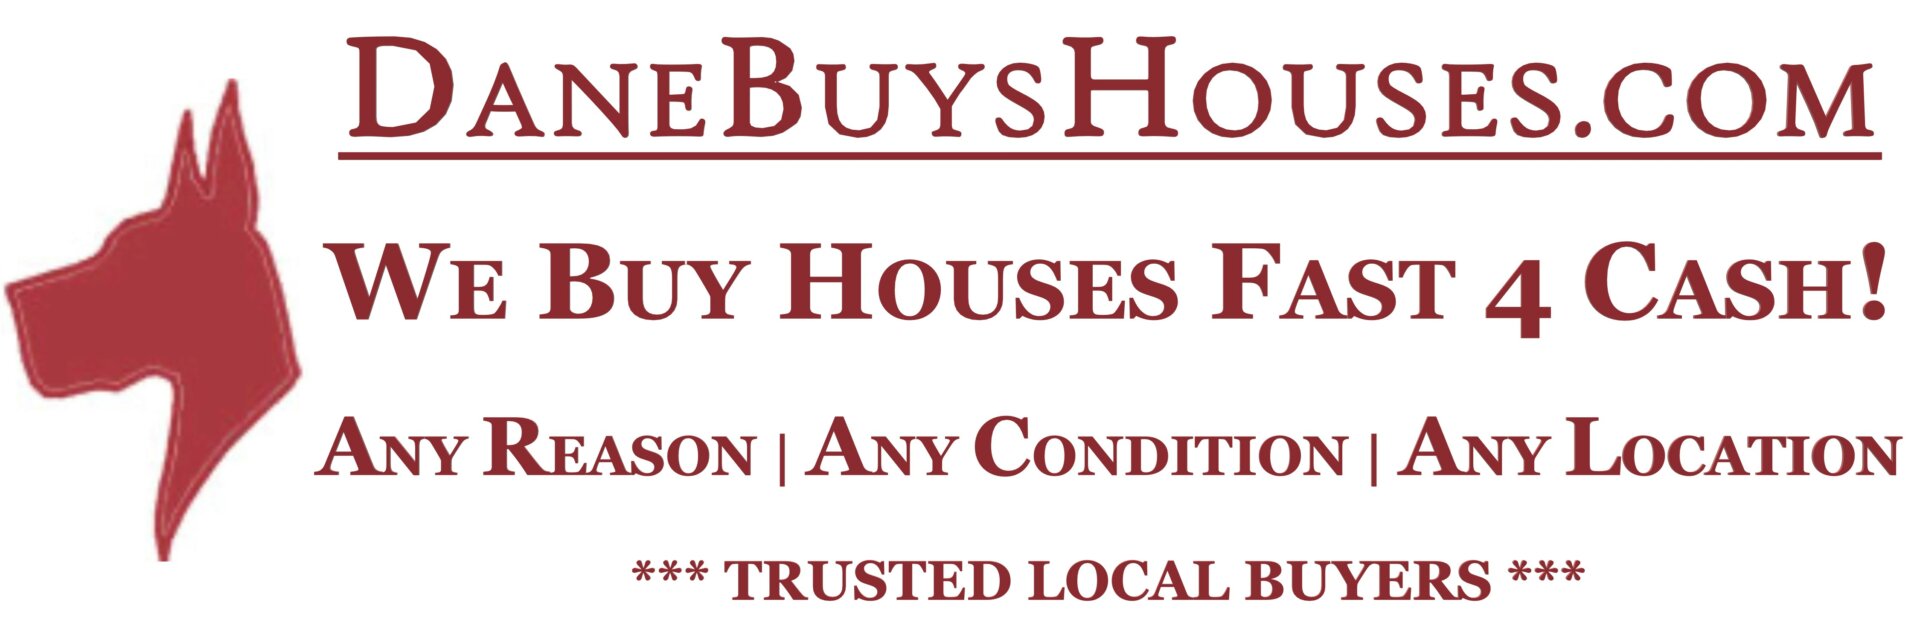 DaneBuysHouses.com | Dane Buys Houses Pittsburgh logo